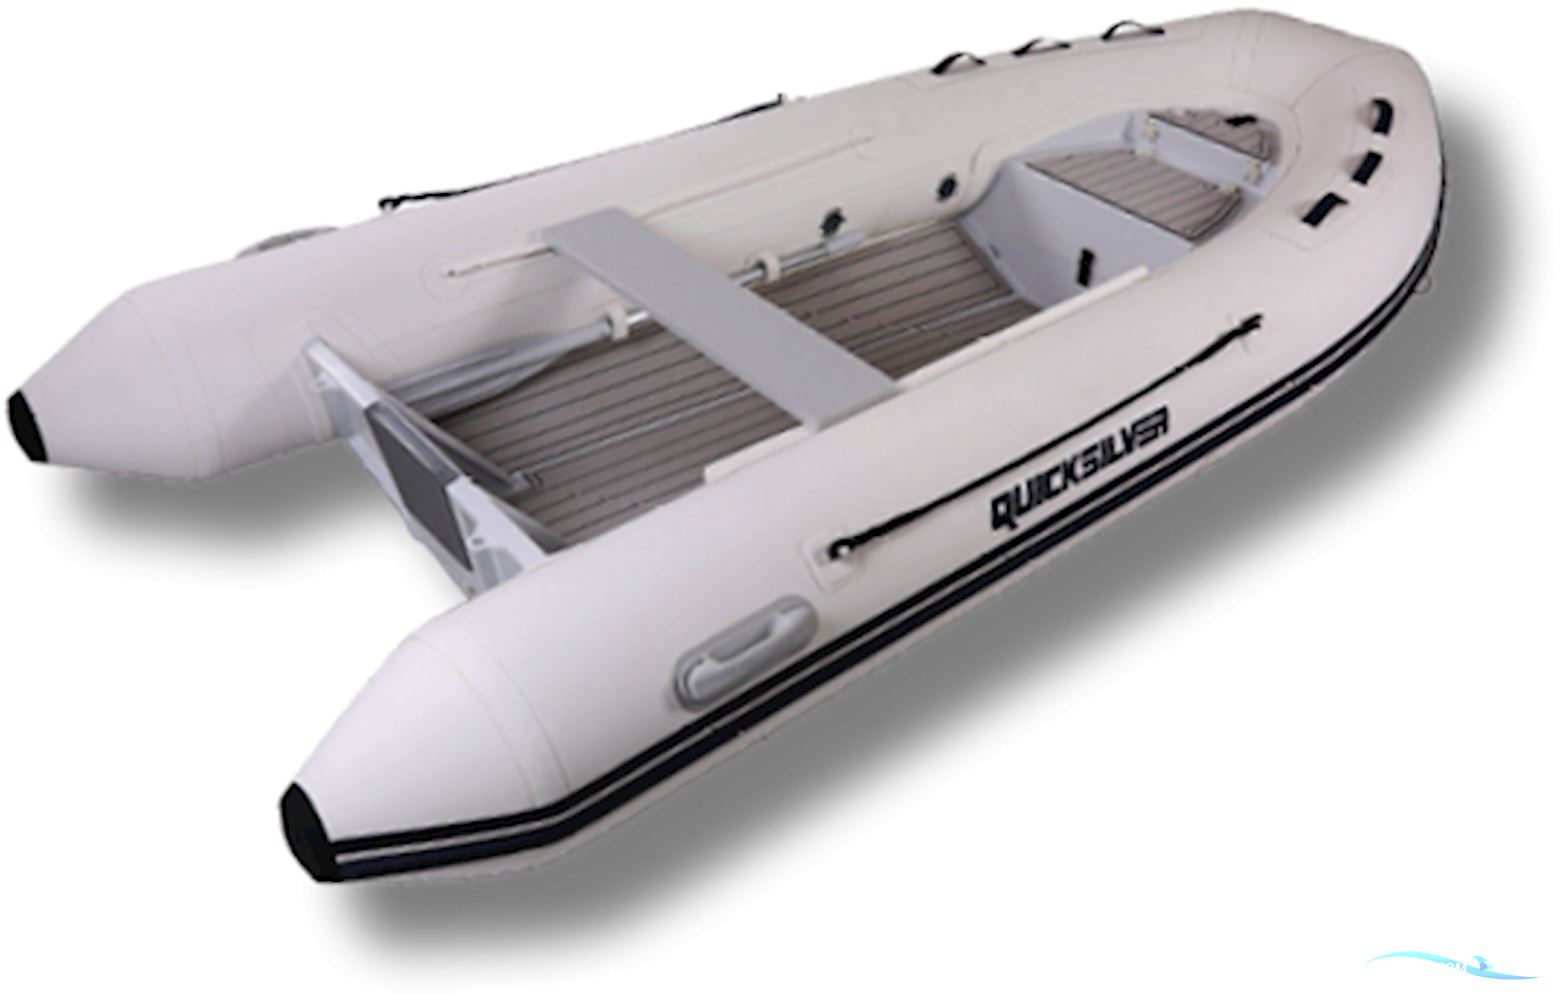 Quicksilver 350 Aluminium Hypalon Schlauchboot / Rib 2023, Deutschland